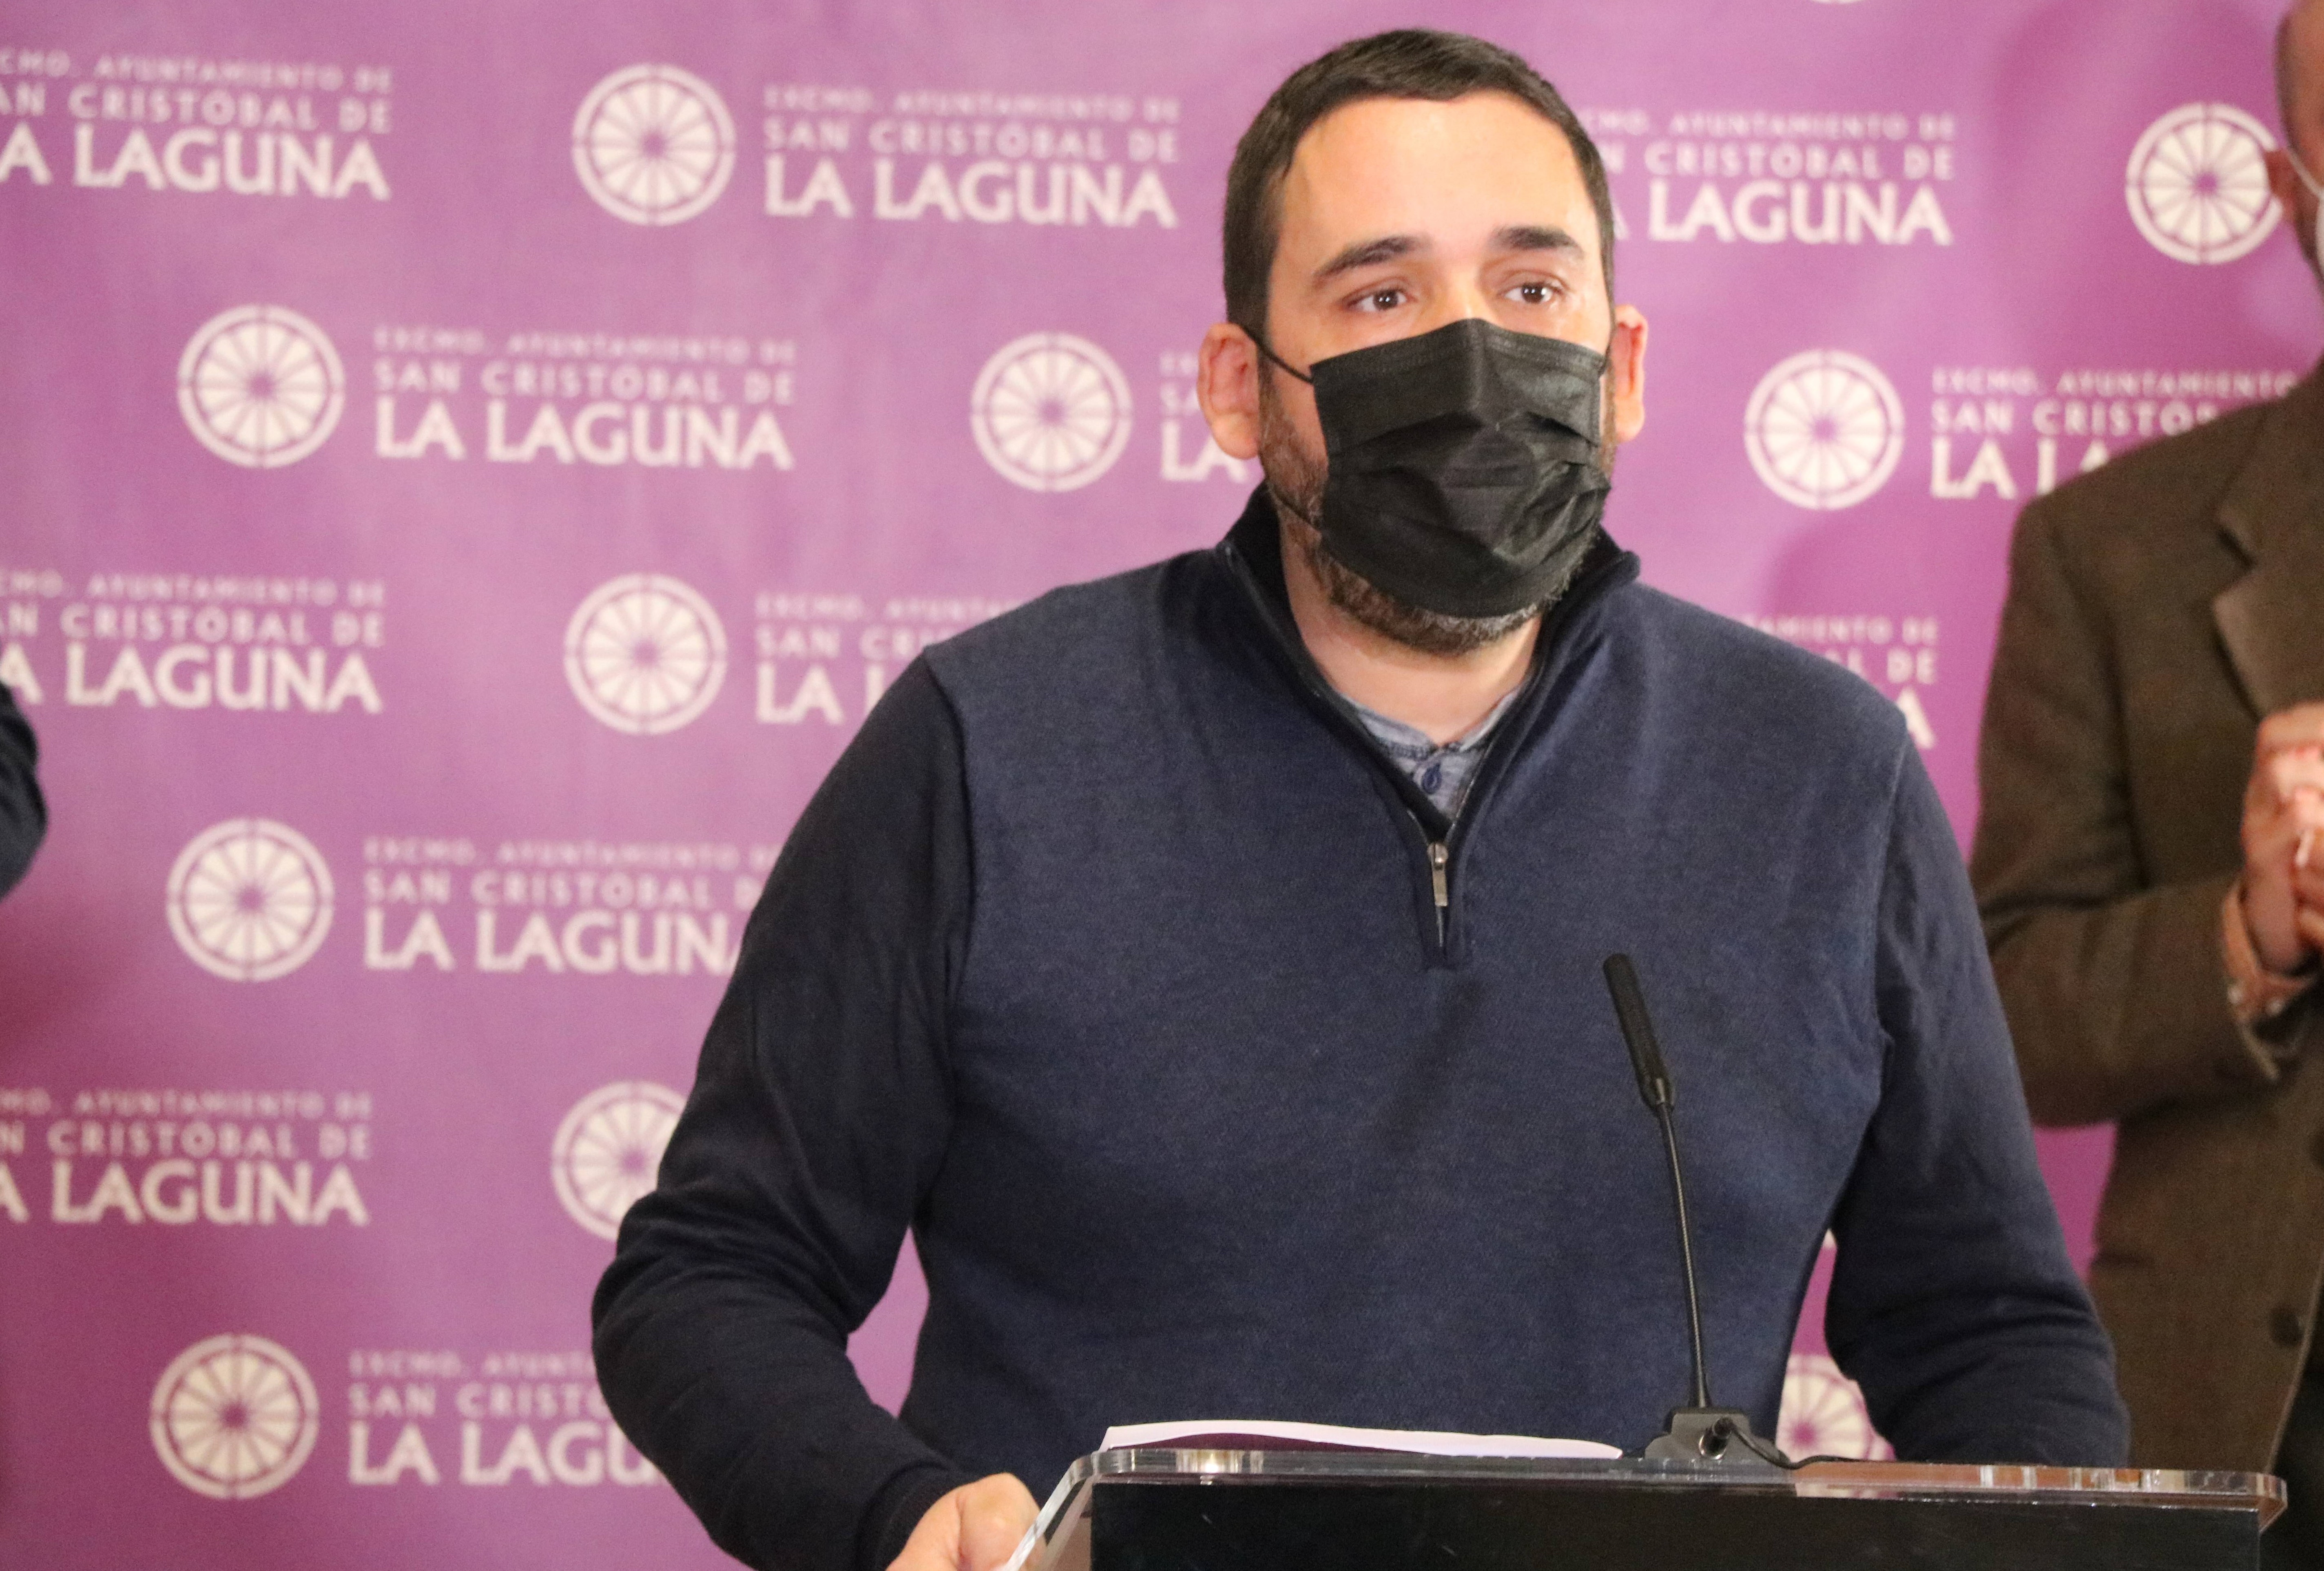 Rubens Ascanio, concejal de Bienestar Social del Ayuntamiento de La Laguna (Tenerife) / CanariasNoticias.es